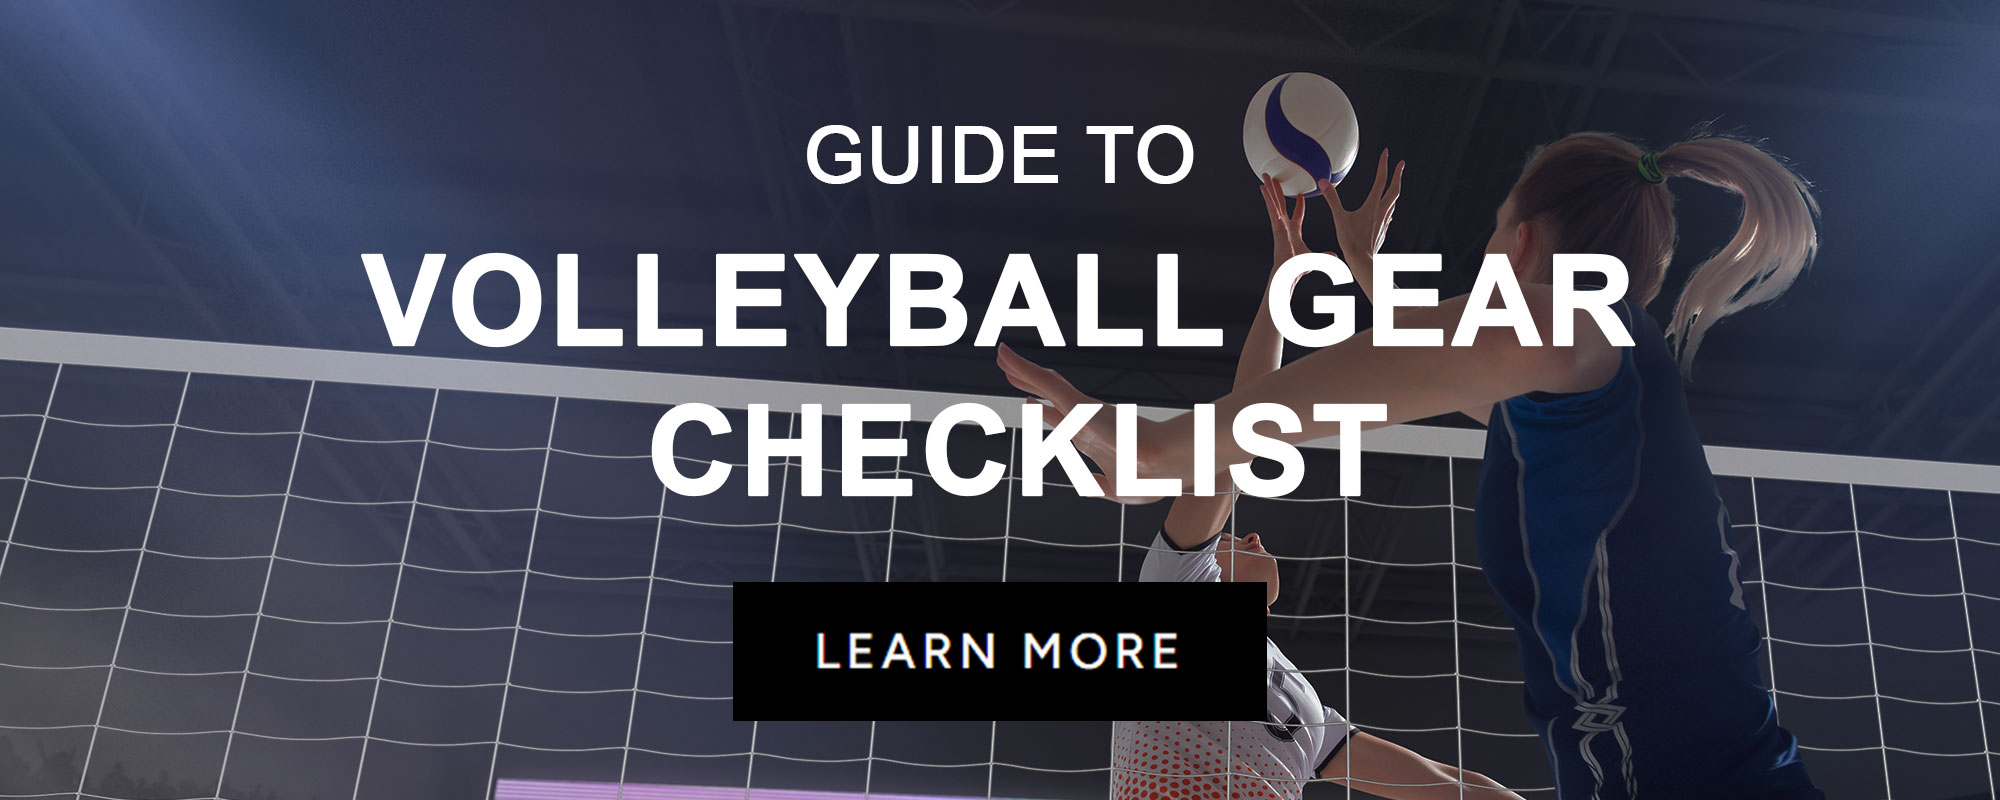 GUIDES_SPORT_VolleyballGearChecklist.jpg